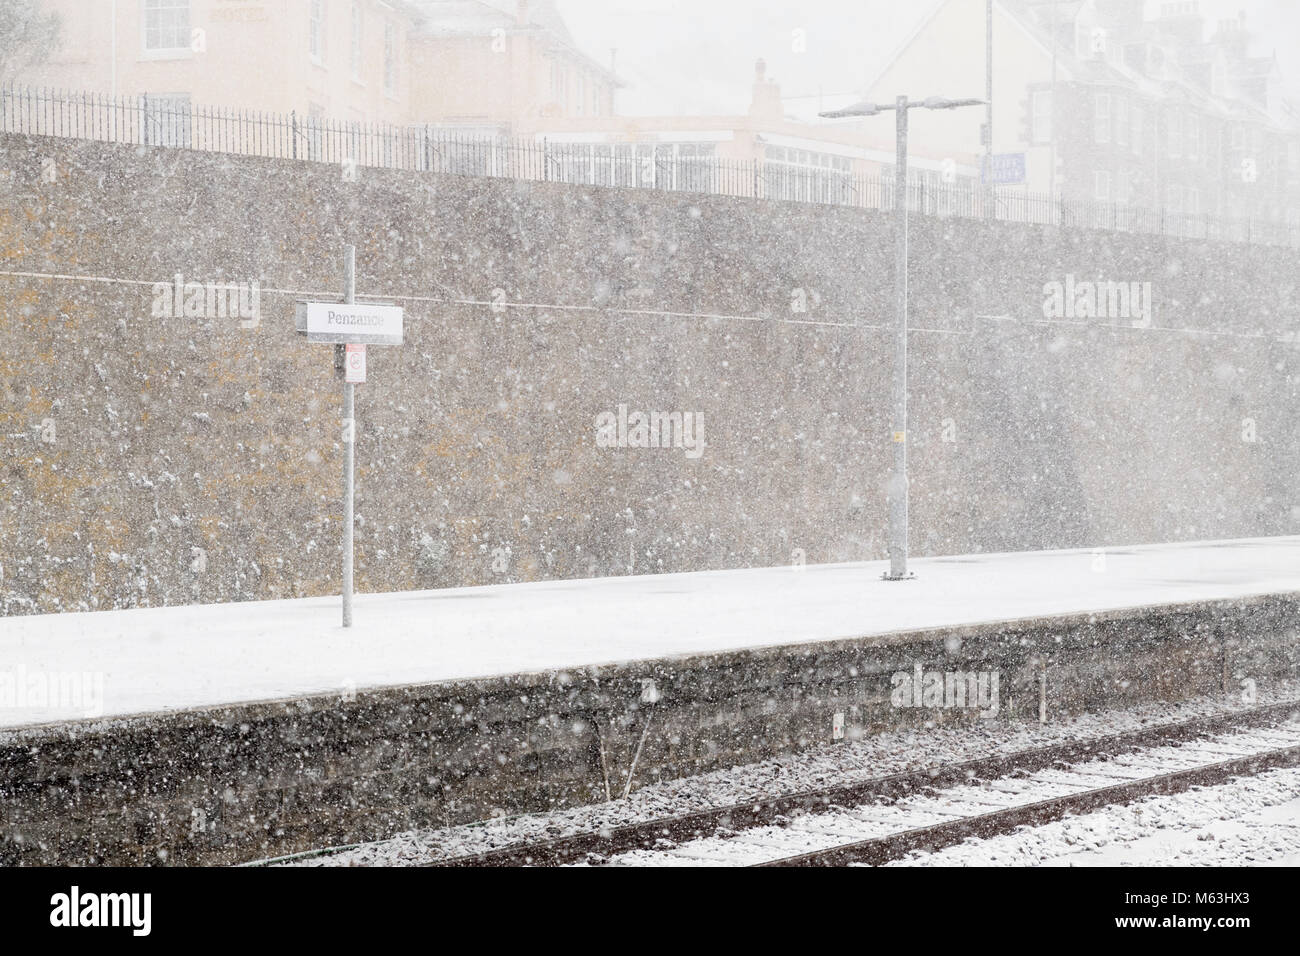 Penzance, Cornwall, UK. 28 Février, 2018. Les fortes chutes de neige dans la région de Penzance, Cornwall. Tempête de neige conditions à Penzance railway station Crédit : Bob Sharples/Alamy Live News Banque D'Images